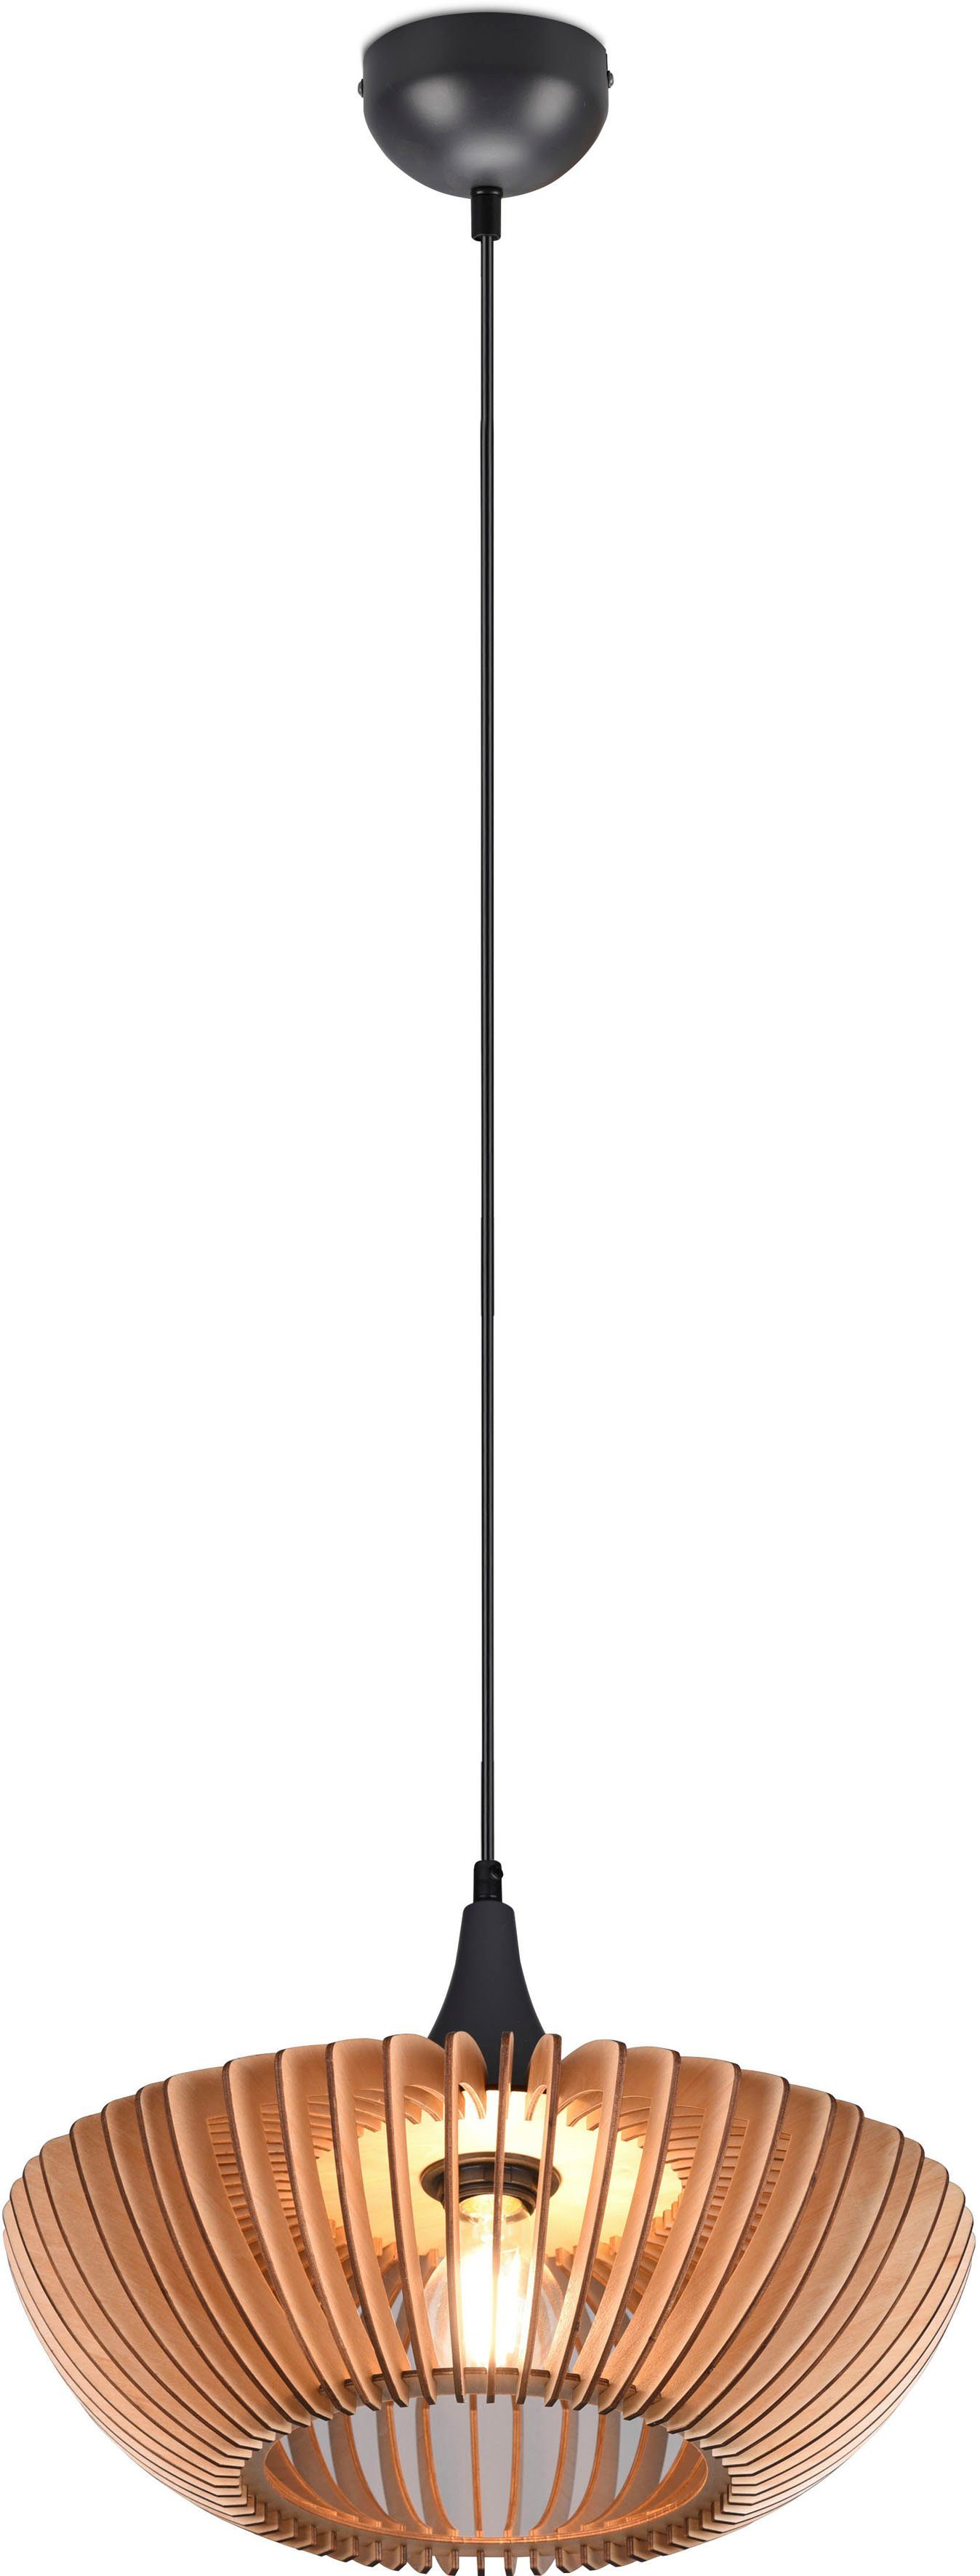 TRIO Leuchten Pendelleuchte Colino, ohne Leuchtmittel, warmweiß - kaltweiß,  Hängelampe mit Holzschirm Ø40cm höhenverstellbar bis 150cm, exkl 1xE27,  Lamellen-Design des Holzschirms (Ø 40 cm) sorgt für einzigartige  Lichteffekte | Deckenlampen